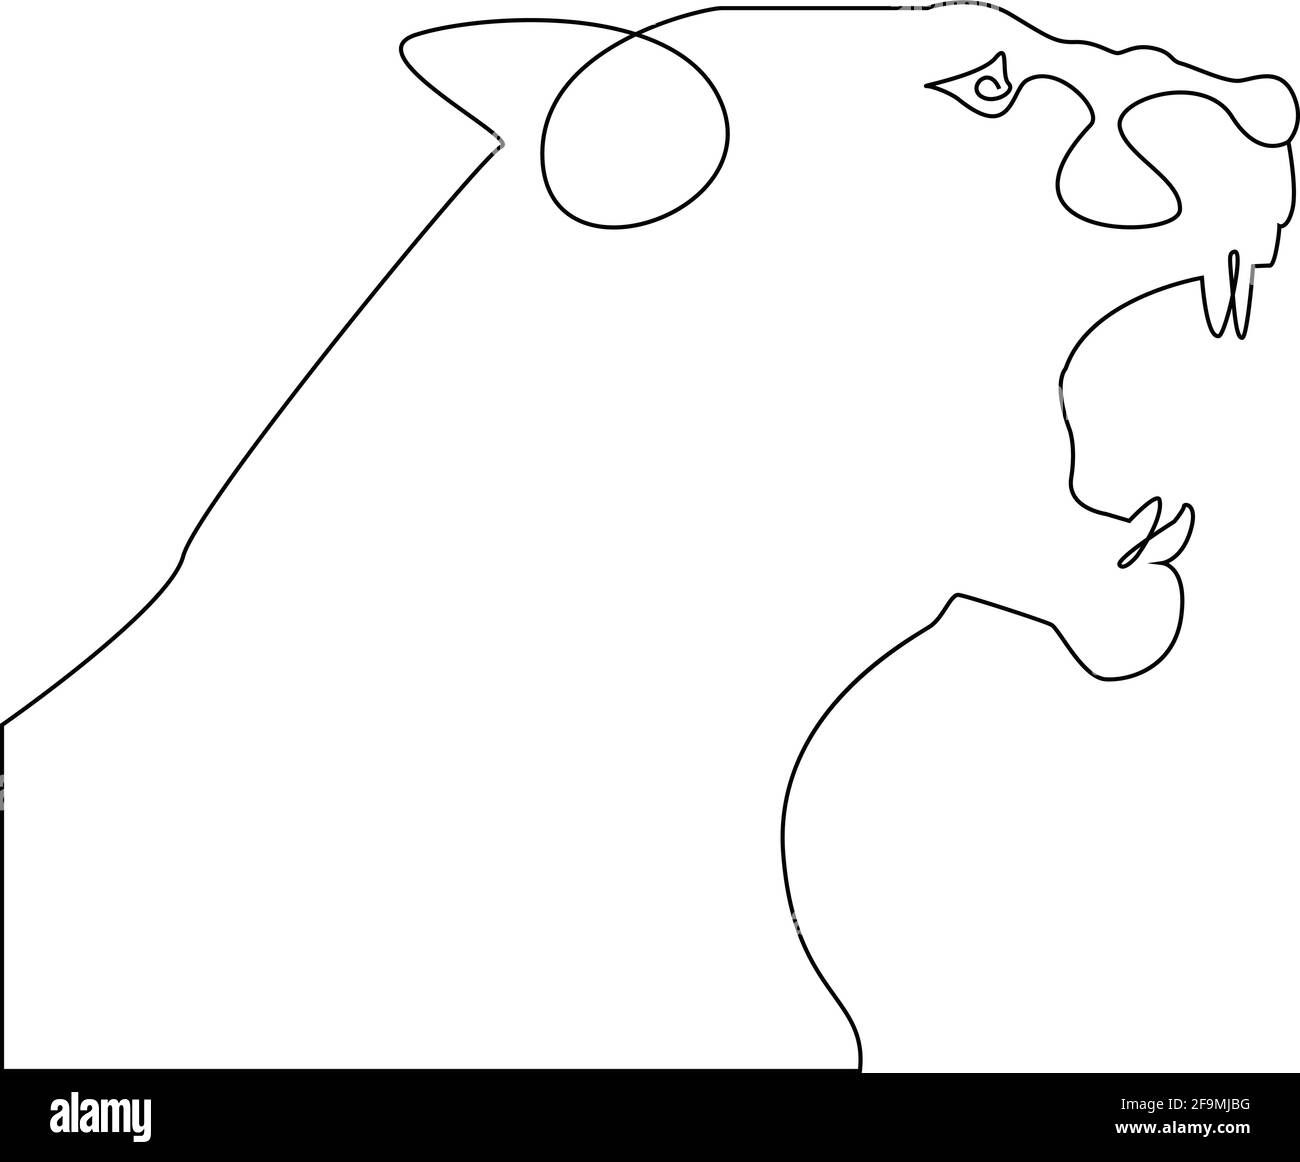 Minimalistischer One Line Head of Tiger oder Löwin mit offenem Mund. Wütend Tiger Kopf eine Linie Hand Zeichnung kontinuierliche Vektor Illustration. Freie Single-Line-Drawi Stock Vektor